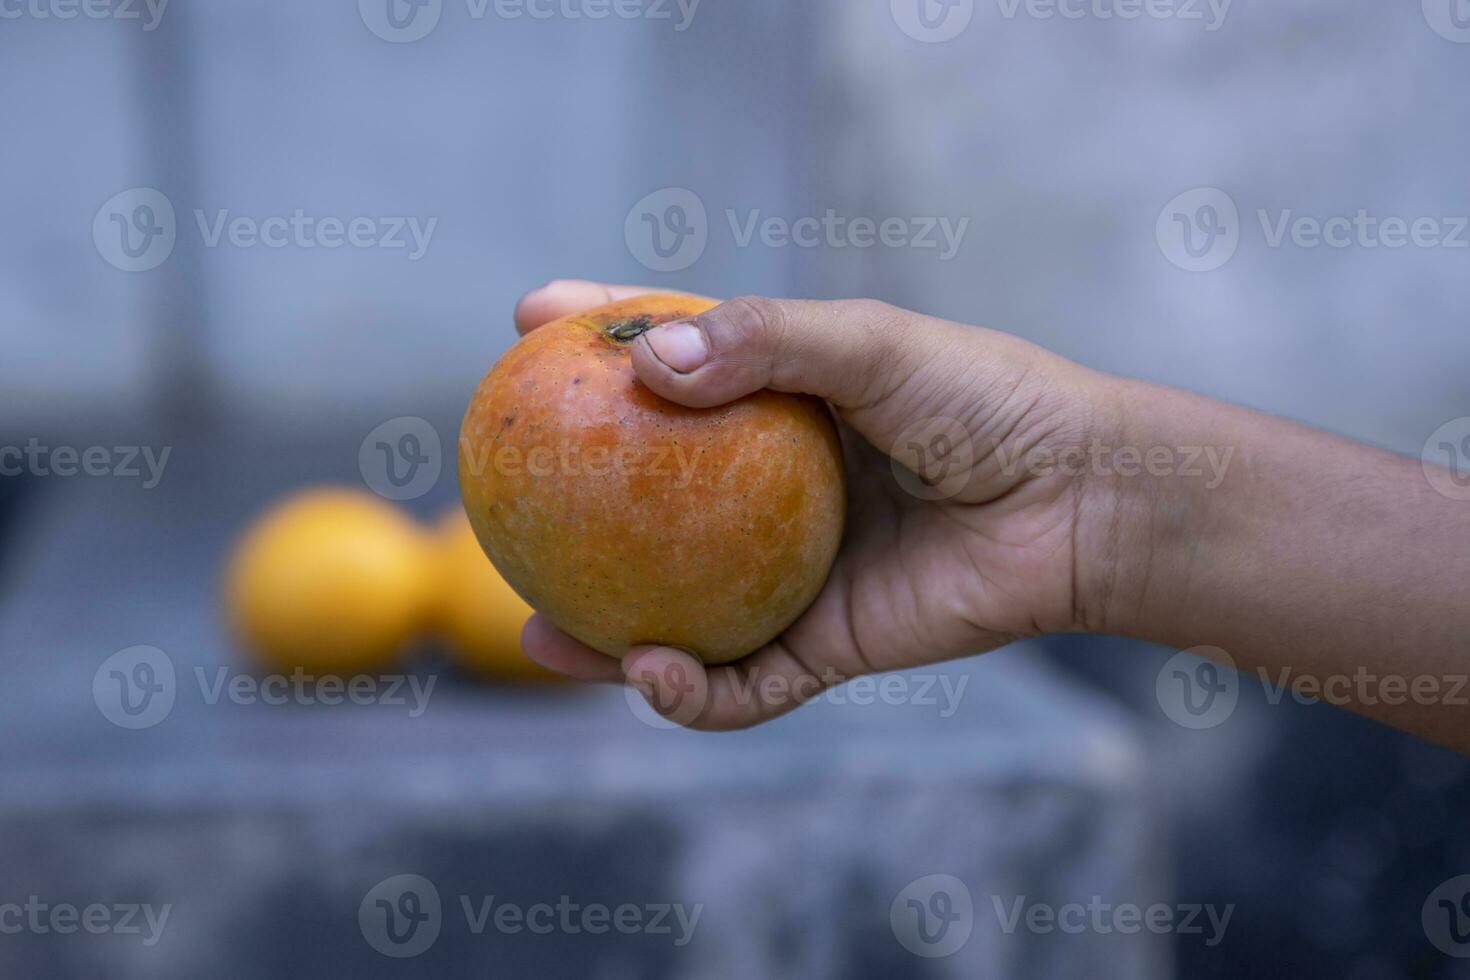 vicino su di uomo mano Tenere fresco Mango frutta nel natura sfondo foto